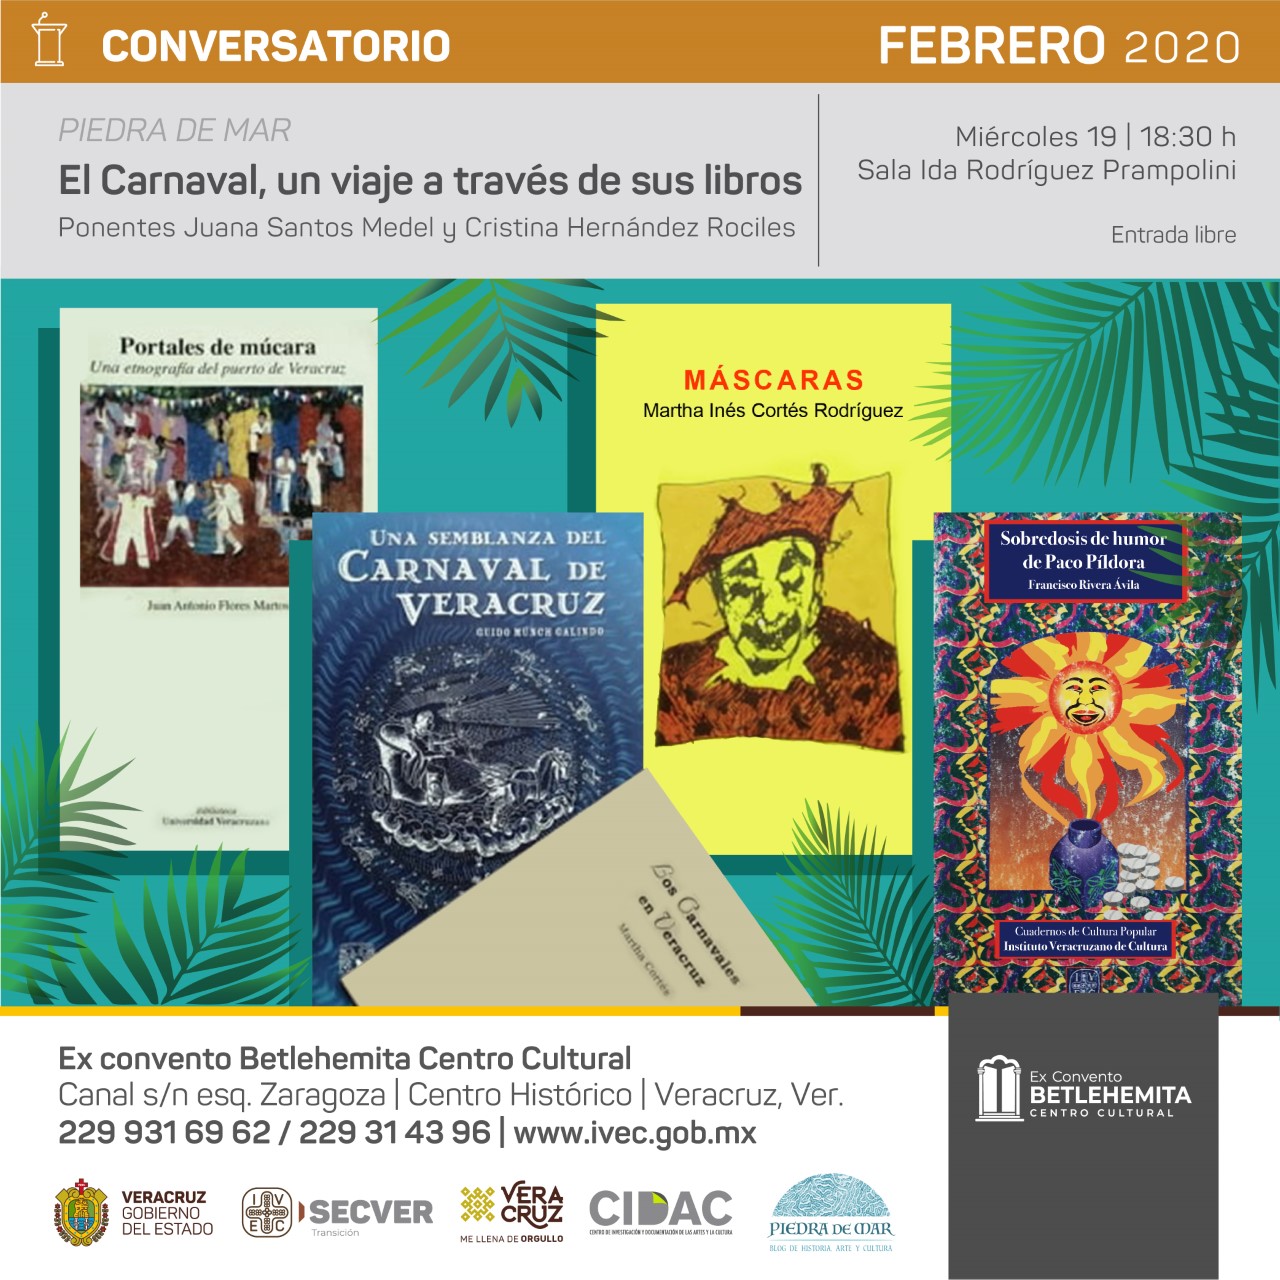 Conversatorio sobre el Carnaval de Veracruz en Exconvento Betlehemita